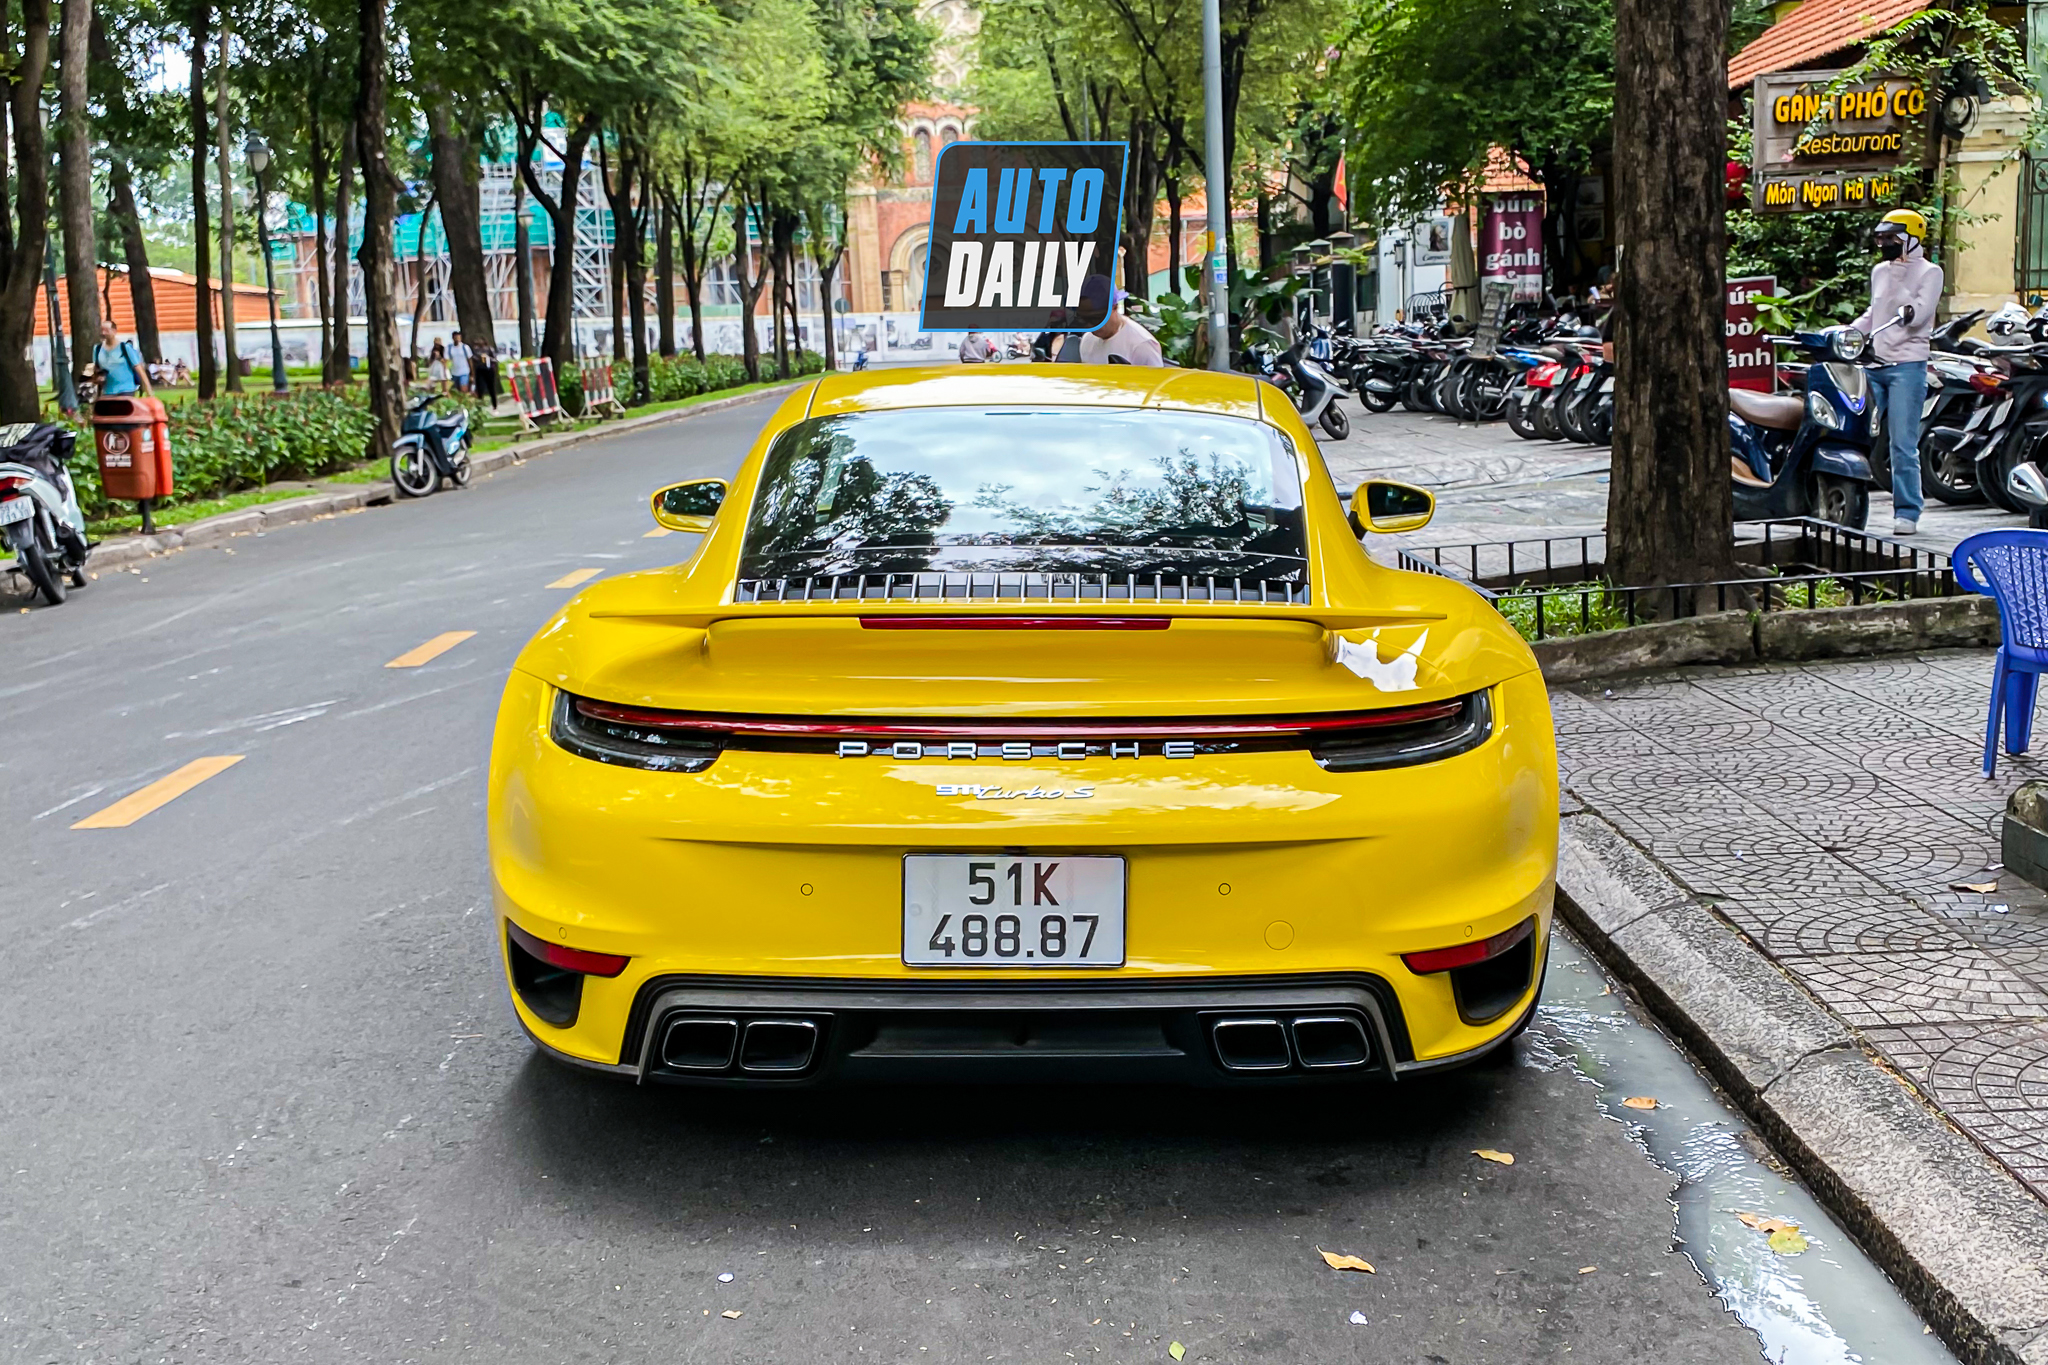 Bắt gặp Porsche 911 Turbo S hơn 17 tỷ màu vàng độc nhất Việt Nam của đại gia Sài Gòn porsche-911-turbo-s-mau-vang-autodaily-8.JPG